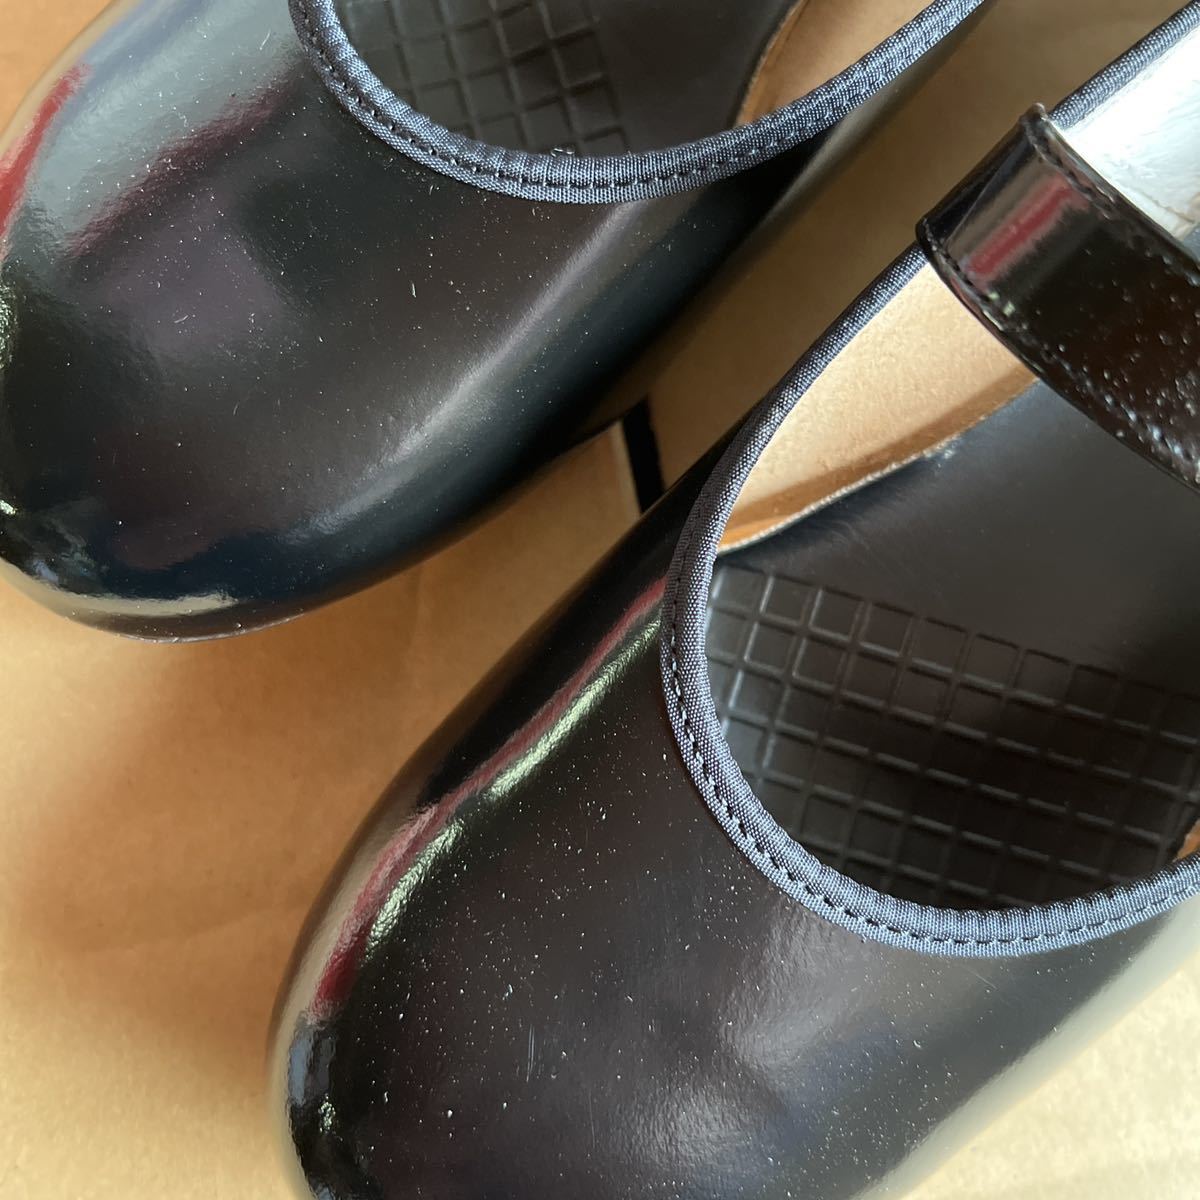  женщина студент посещение школы кожа обувь Asahi товар сделано в Японии 61~14ma Lien n23.5cm1 пара 2500 иен 